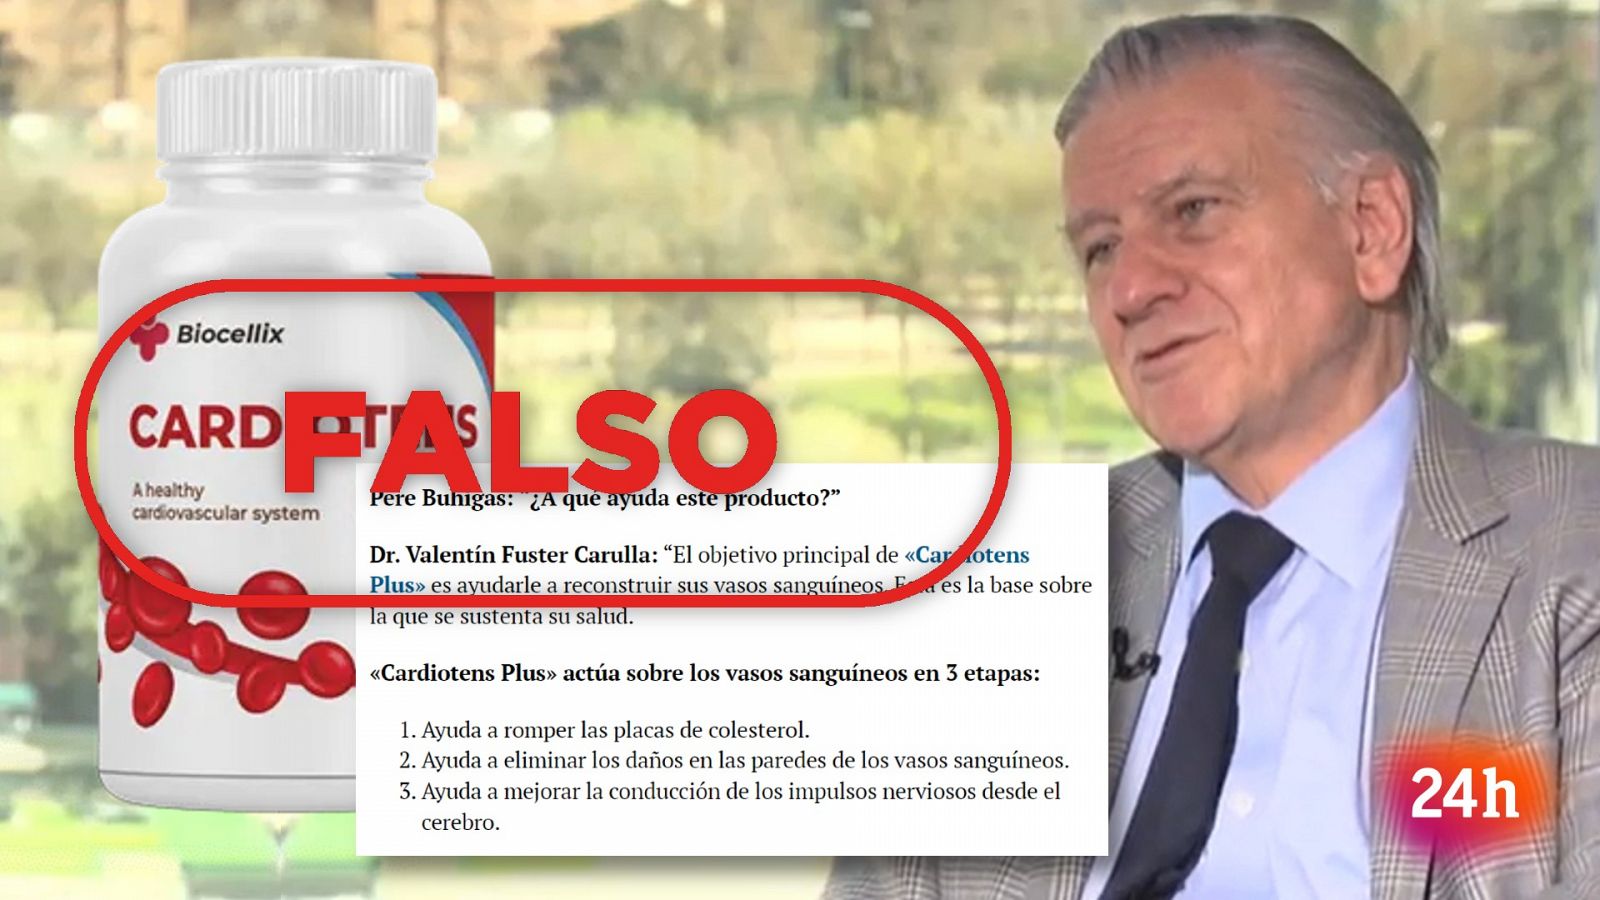 Falsos medicamentos: RTVE no promociona este producto, con el sello Falso en rojo de VerificaRTVE